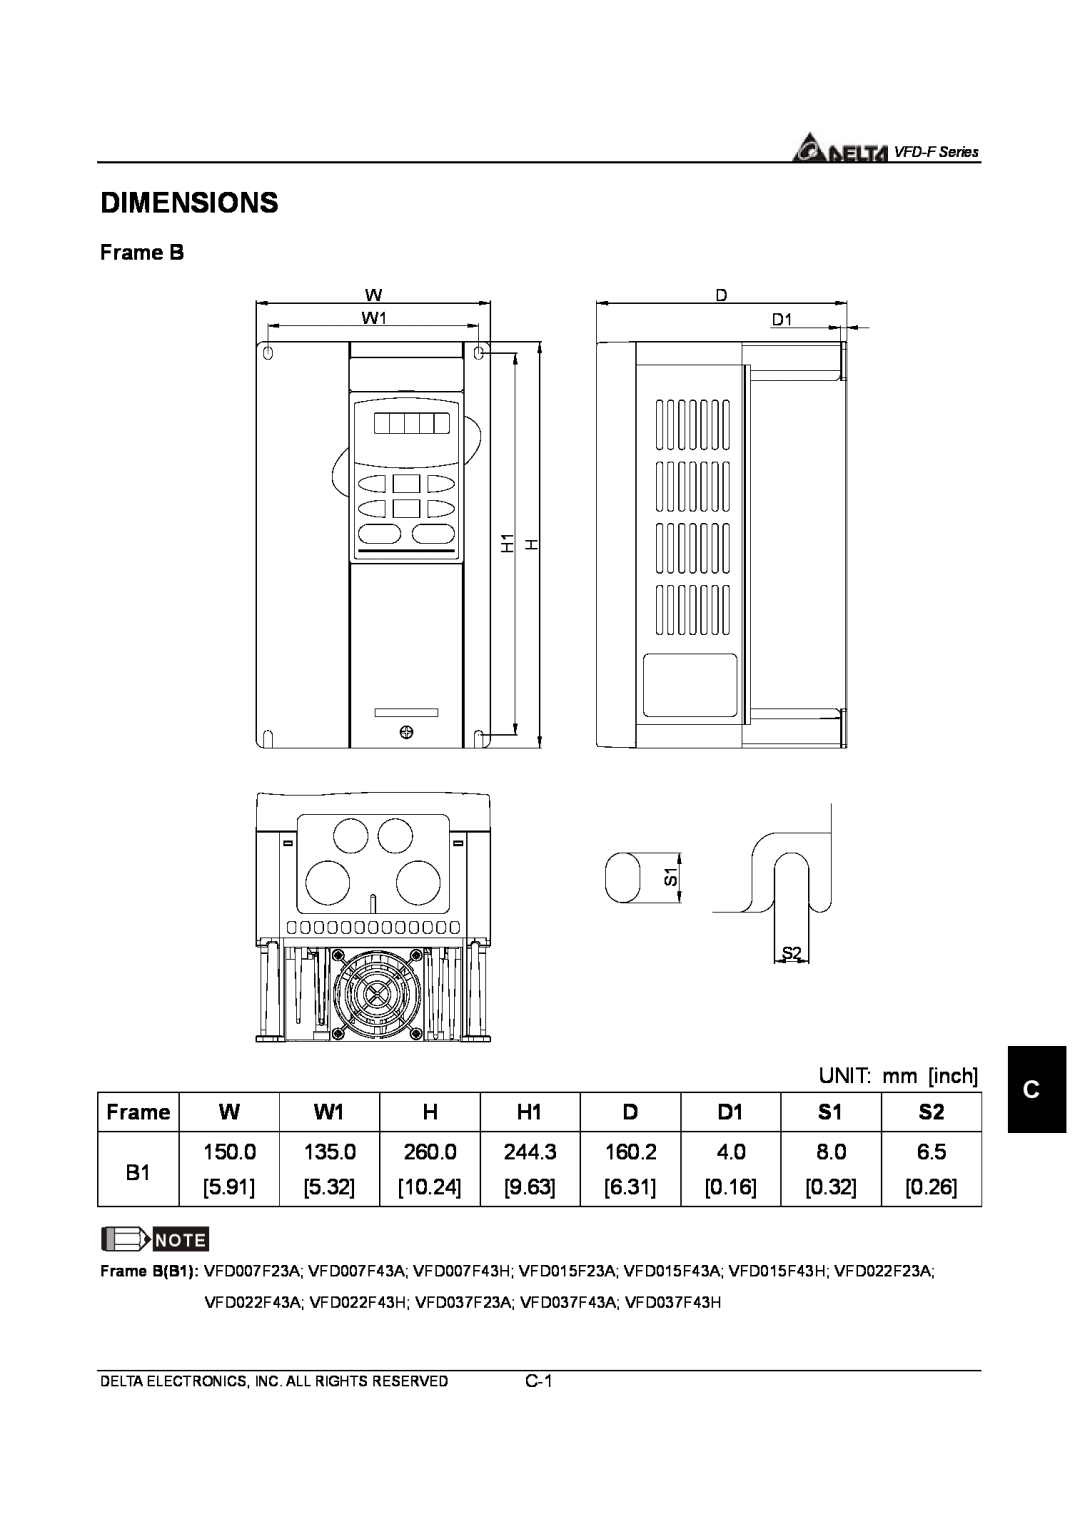 Delta Electronics VFD-F Series manual Dimensions, Frame B 